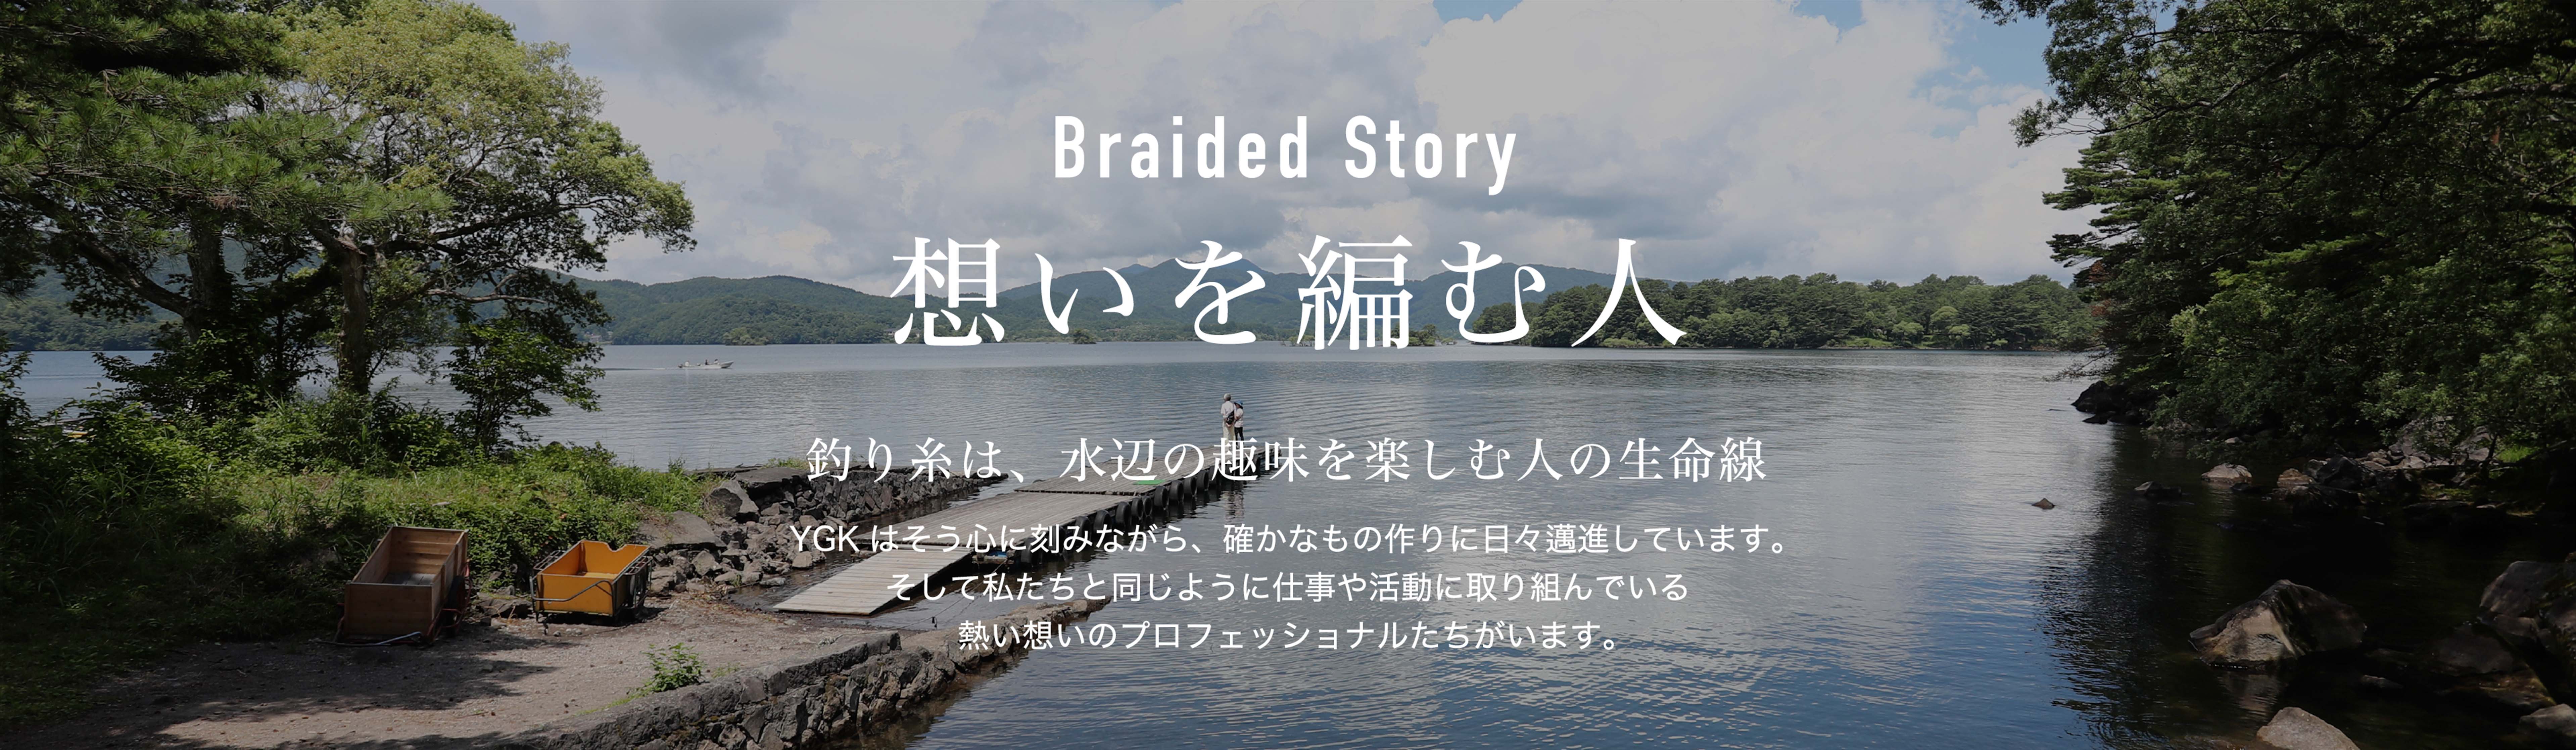 XBRAID ブランドサイト